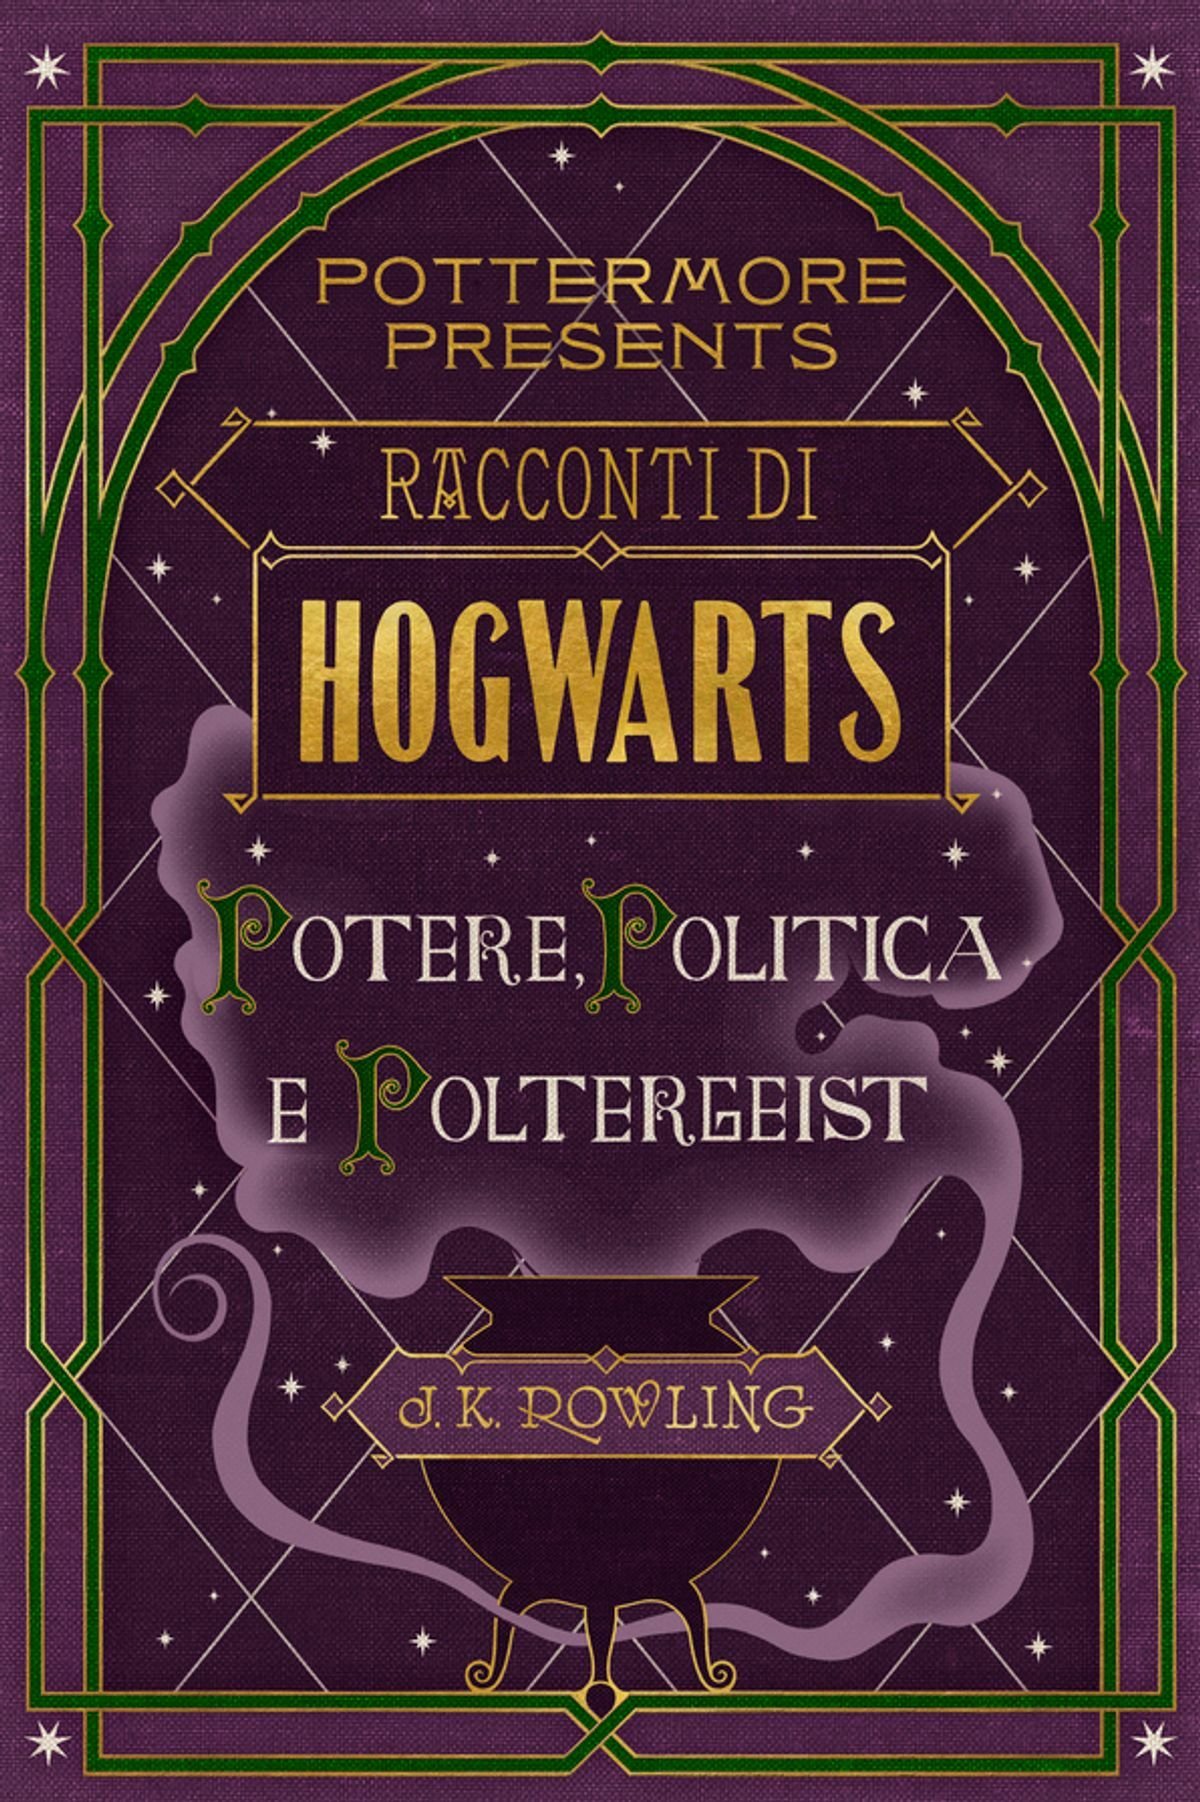 Racconti di Hogwarts: potere, politica e poltergeist